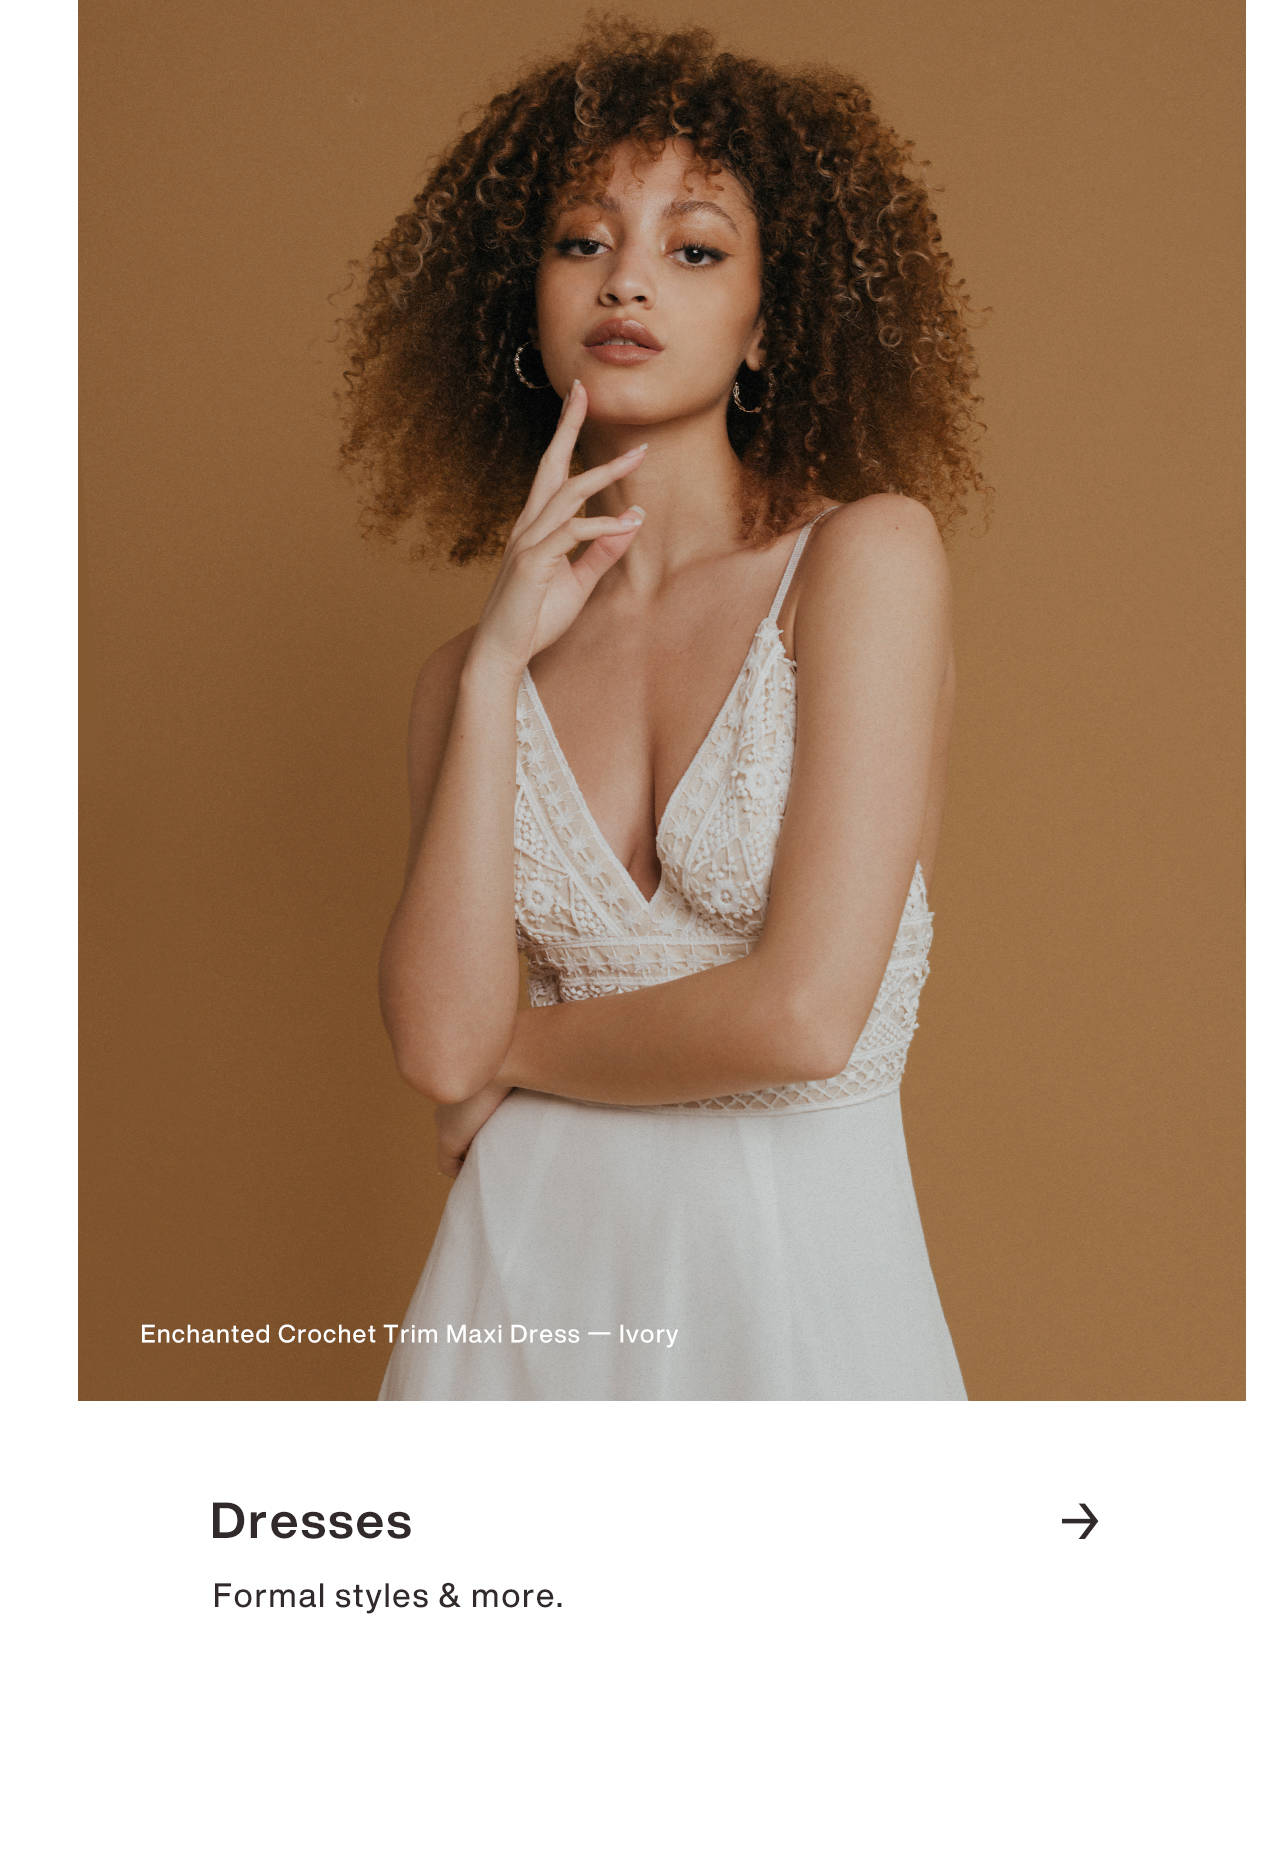 best website to order dresses online